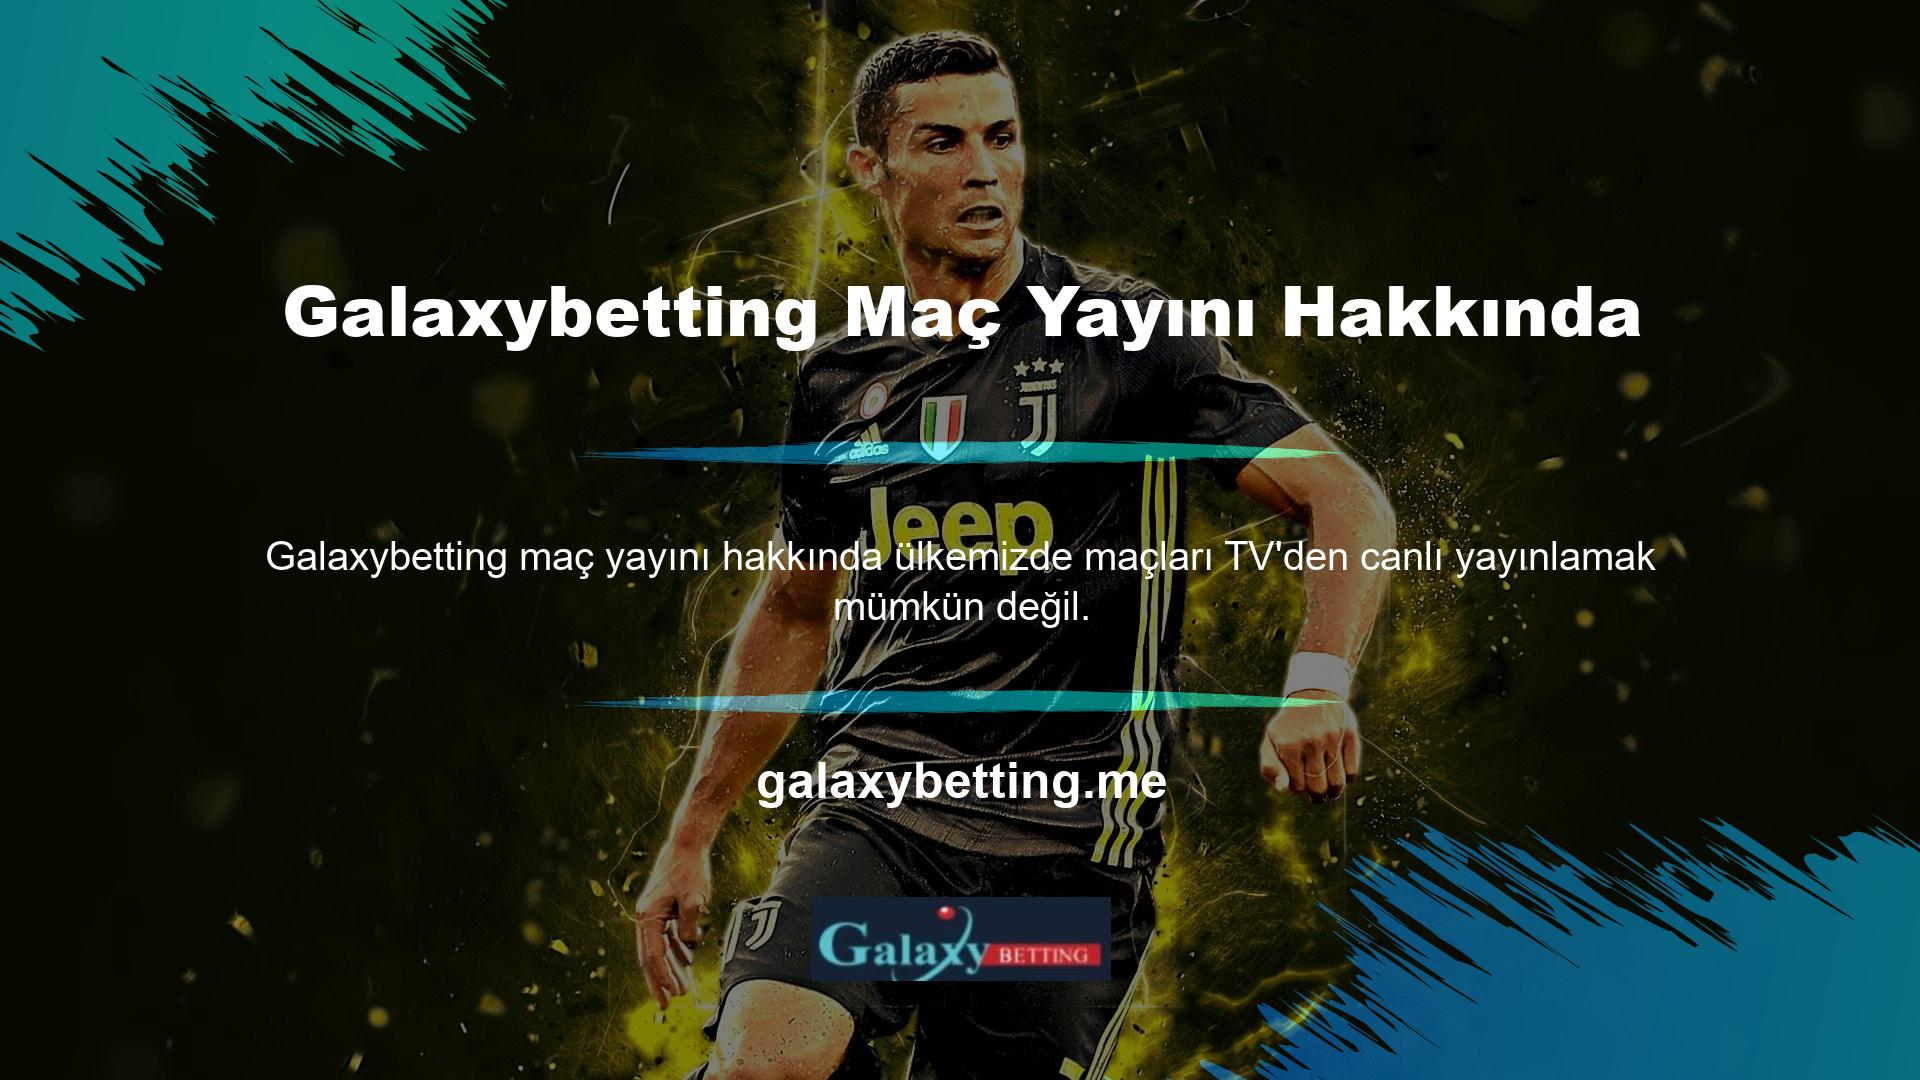 Ancak Galaxybetting TV futbol maçlarını kendi sitesinde ücretsiz olarak canlı yayınlıyor